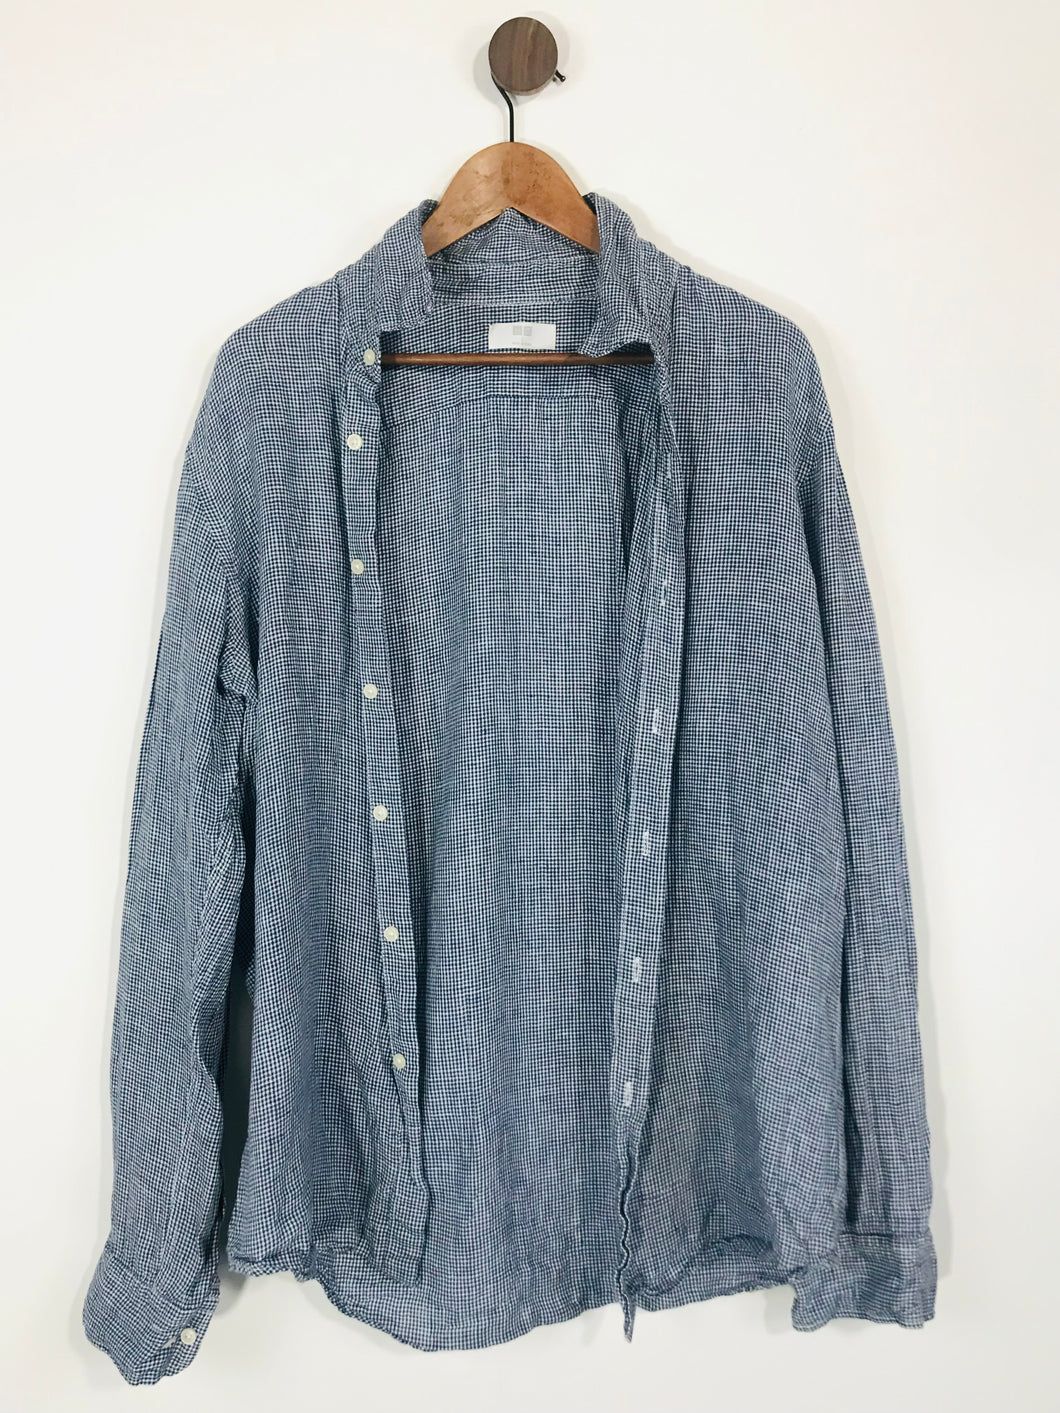 Uniqlo Men's Linen Check Button-Up Shirt | L | Blue